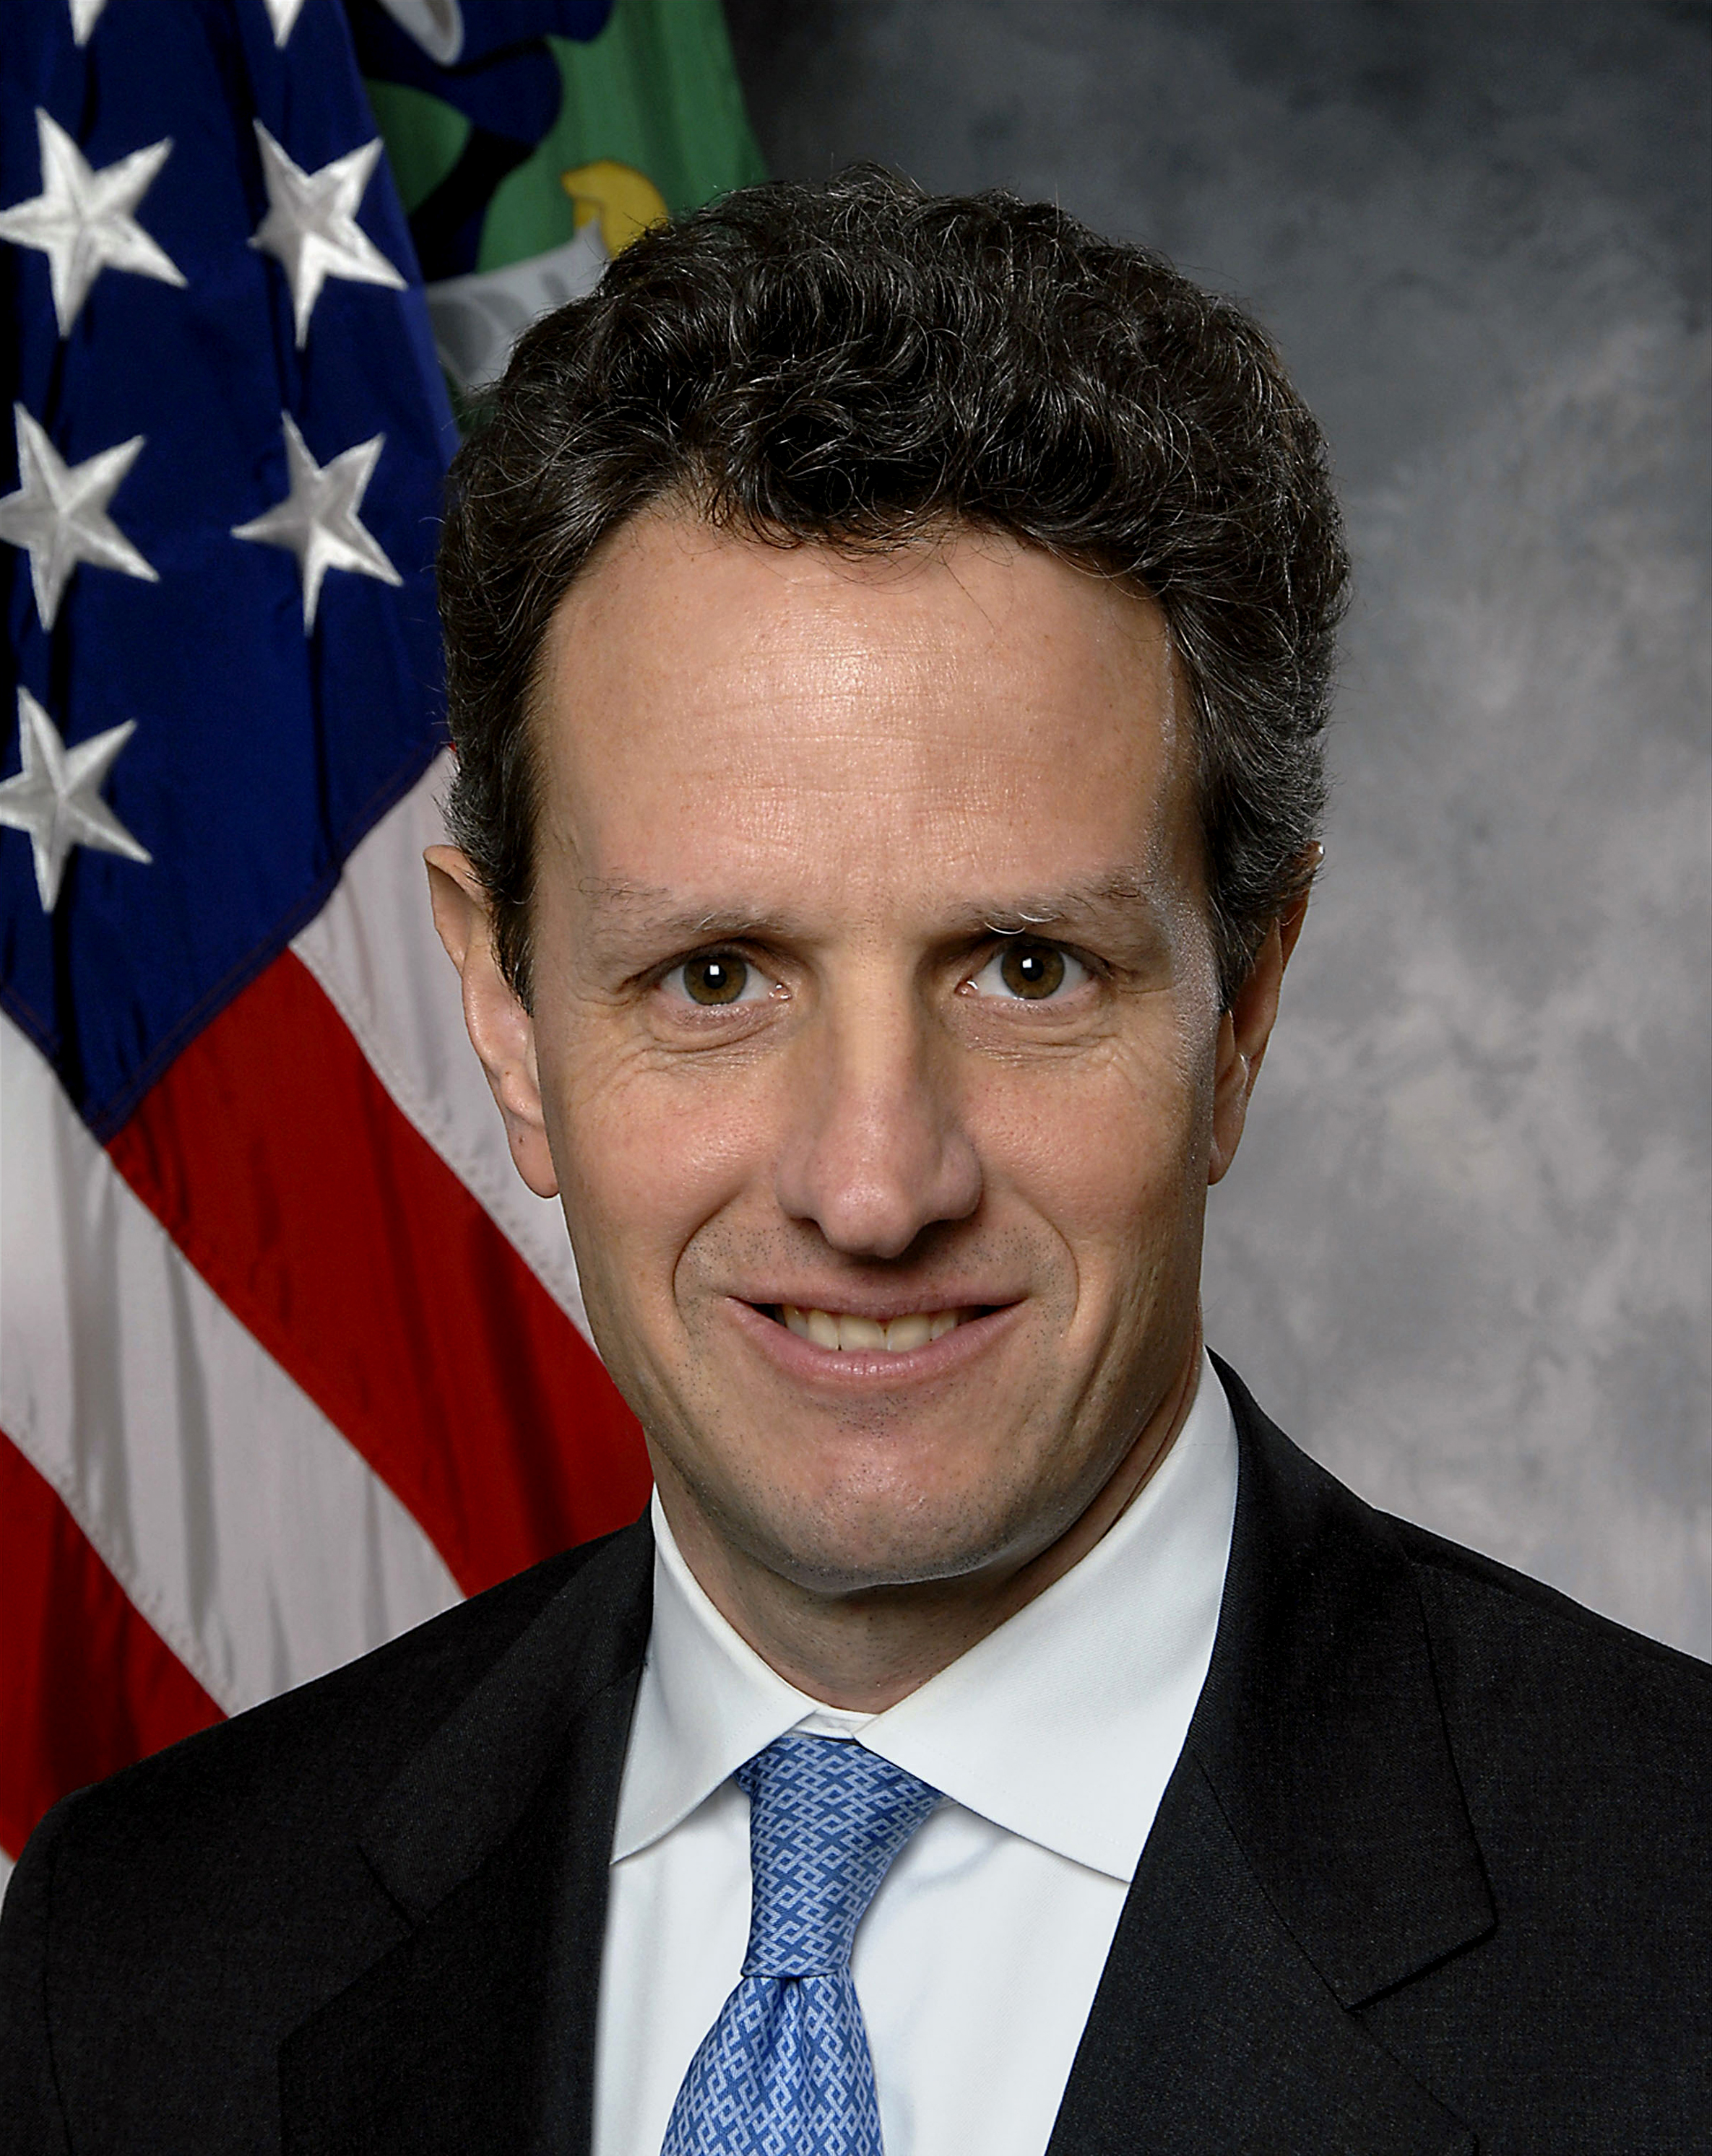 Caso Geithner, golpe? No, autogolpe